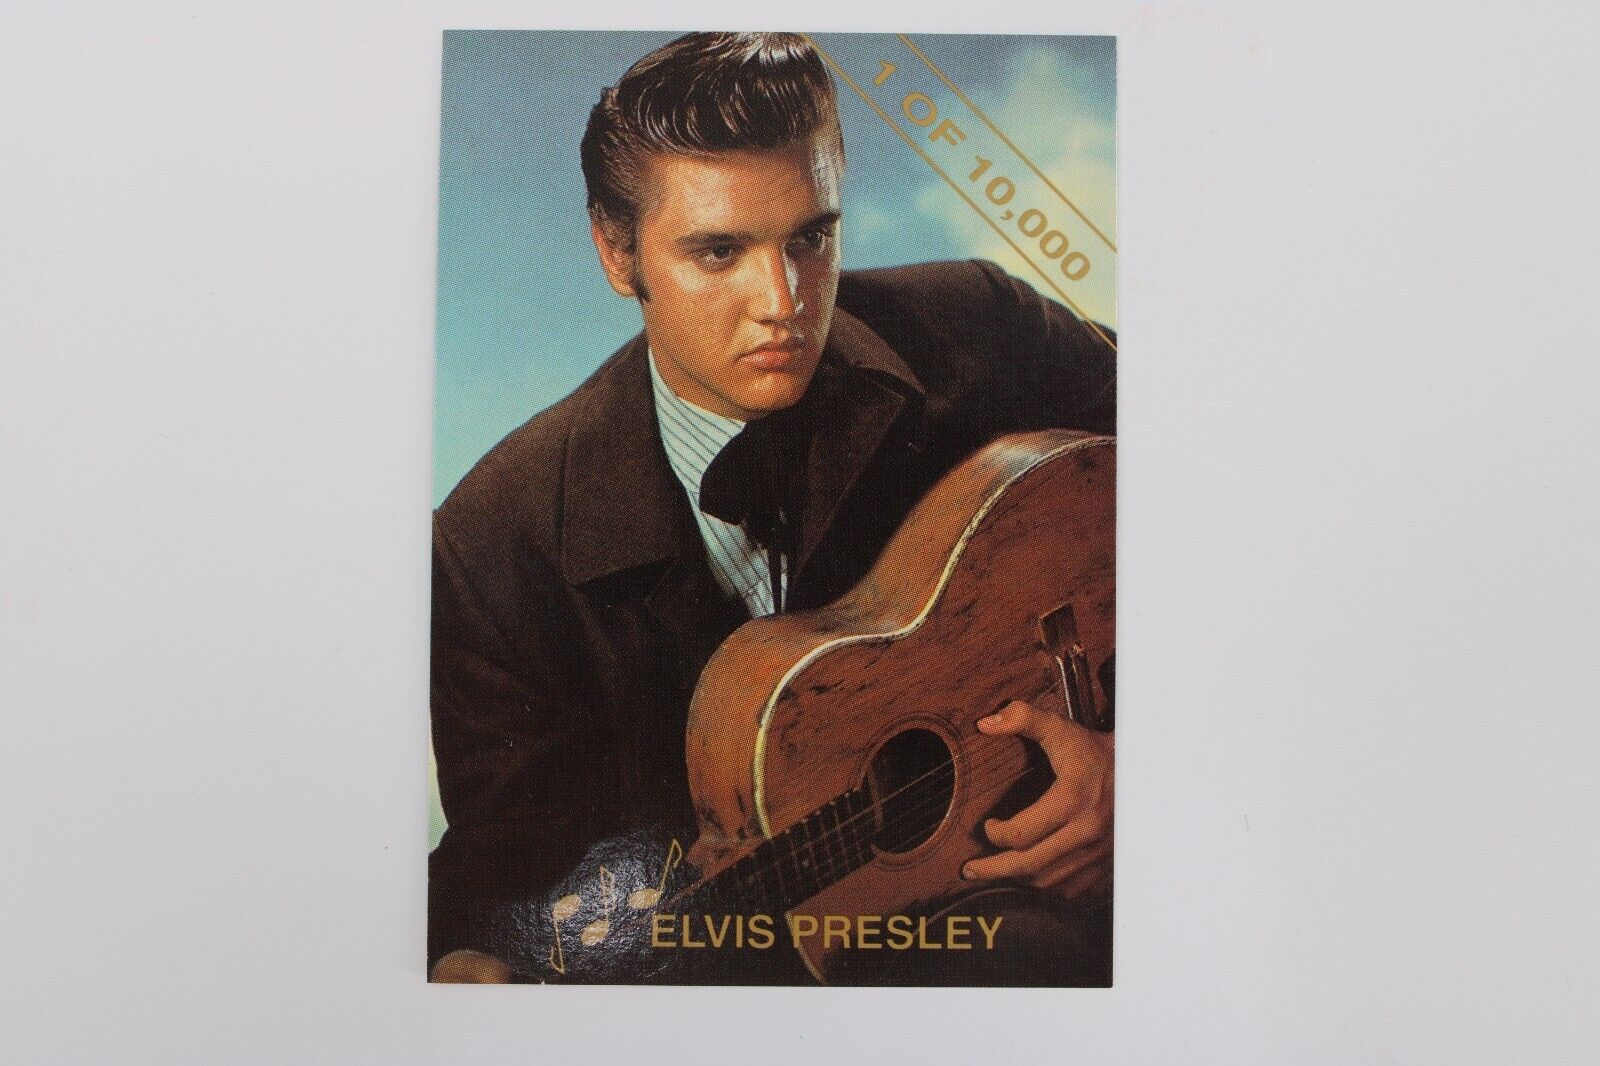 Vintage 1993 Rockstreet - Elvis Presley 1 of 10,000 Promo Card - # 1 of 3